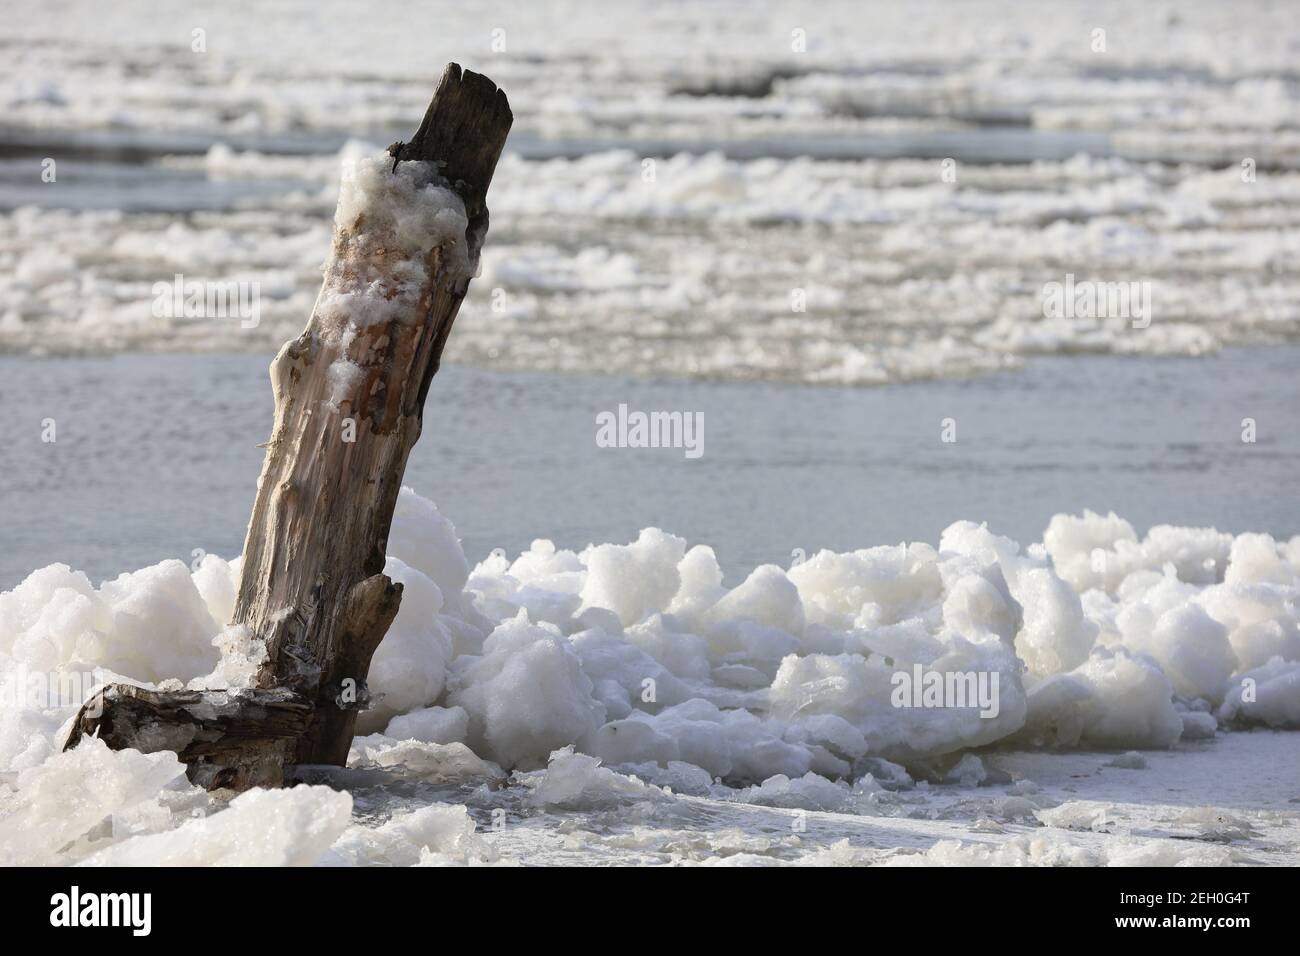 Il fiume è appeso in inverno, si è scongelato dal fiume, gli alberi sulla riva, il tree stump nel ghiaccio, la neve e galleggia sul fiume Foto Stock